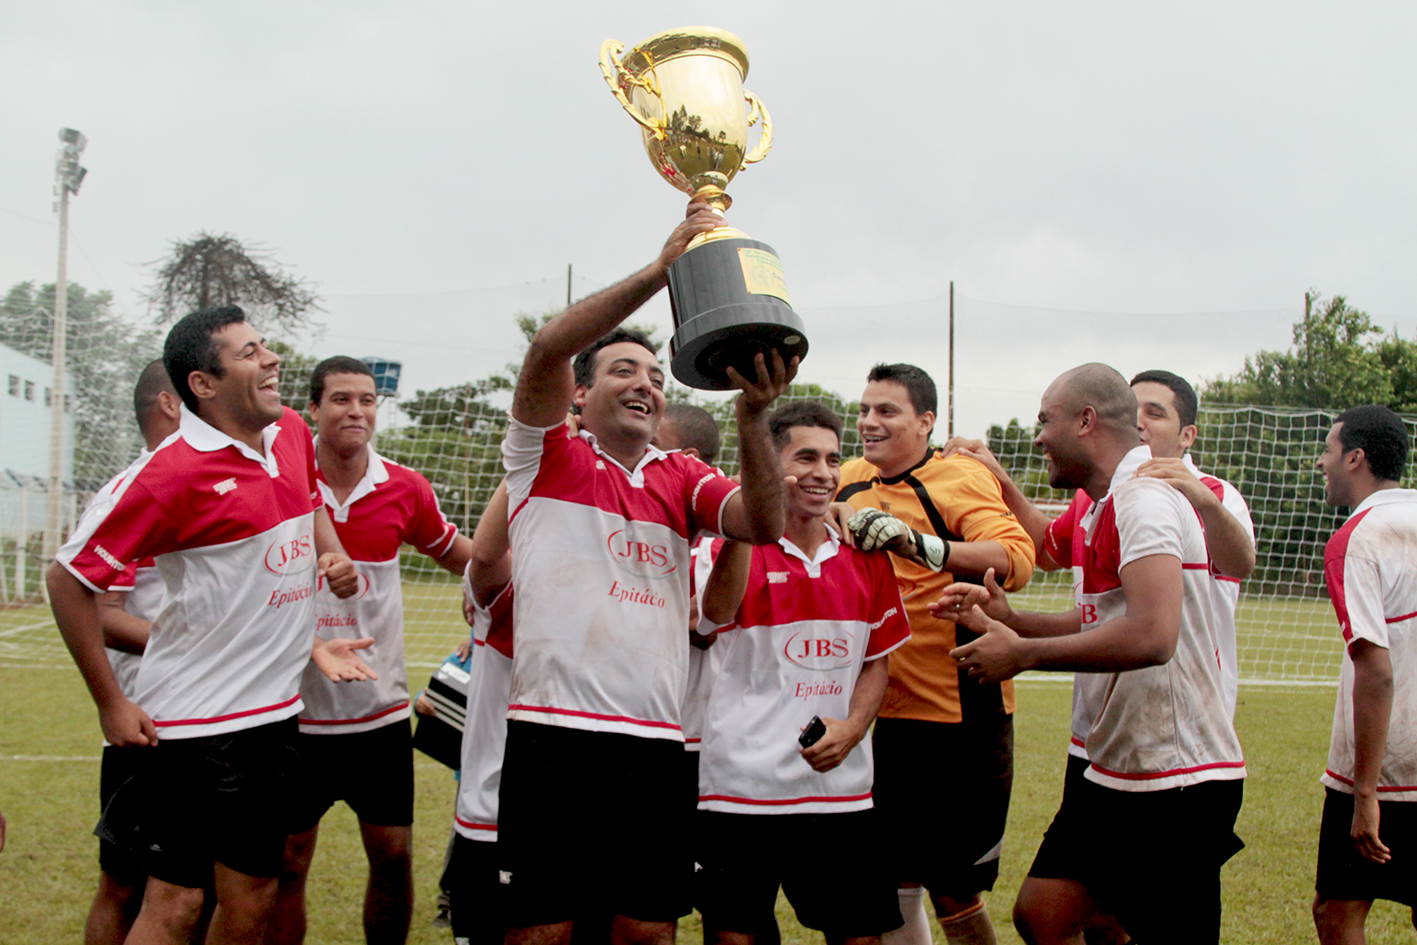 Equipe campeã - JBS - Unidade de Presidente Epitácio – Setor de Congelamento, comemorando a vitória no momento da entrega do troféu e medalhas.